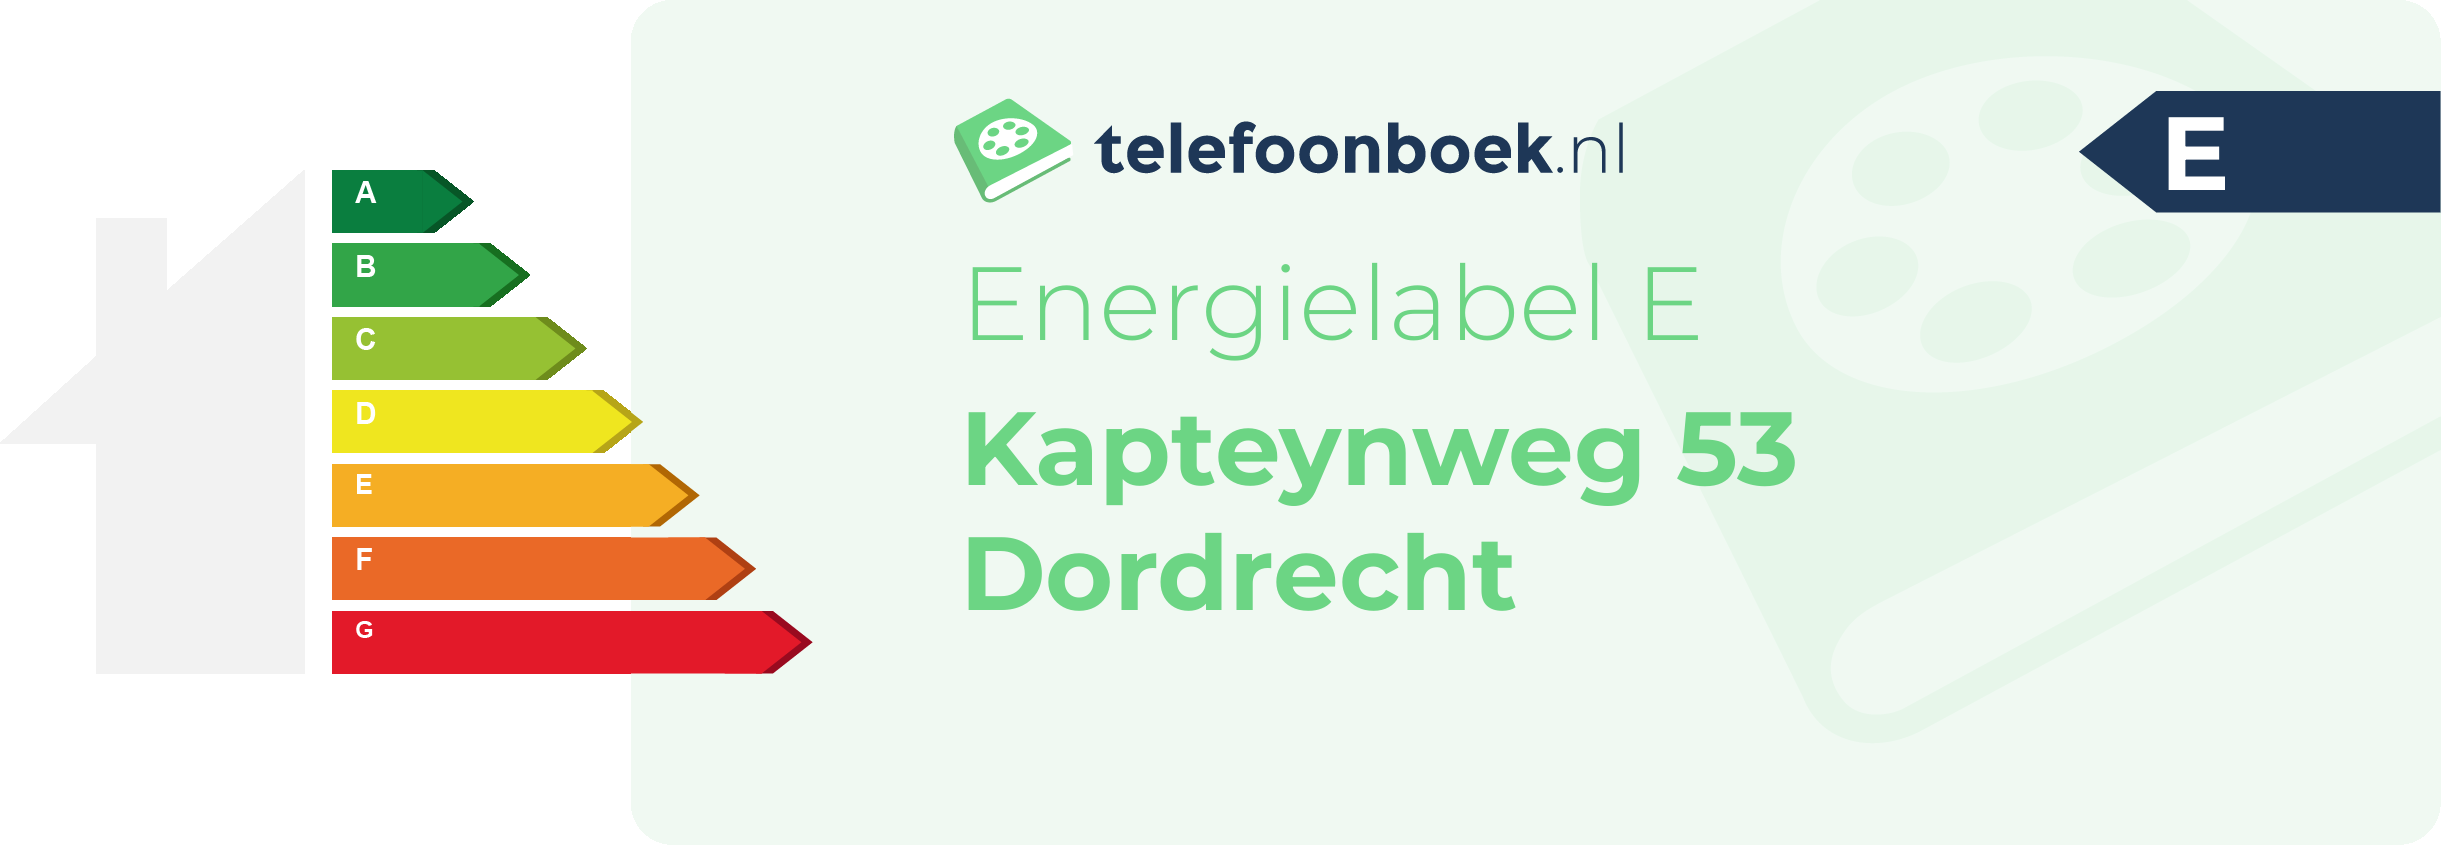 Energielabel Kapteynweg 53 Dordrecht